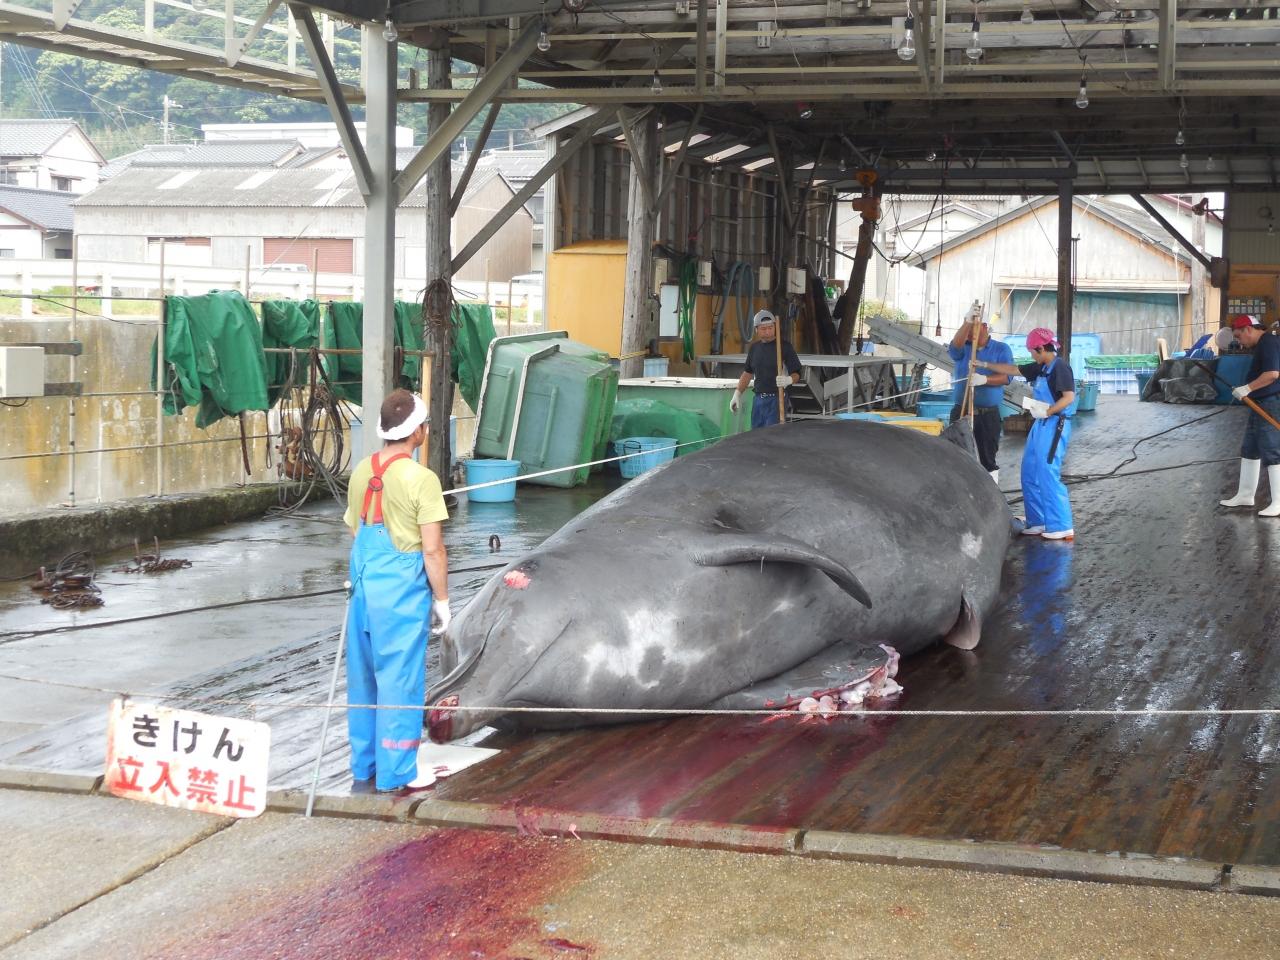 千葉県はディズニーリゾートだけではない 房総和田浦でクジラの解体を見学する 和田 丸山 千葉県 の旅行記 ブログ By てくてくさん フォートラベル